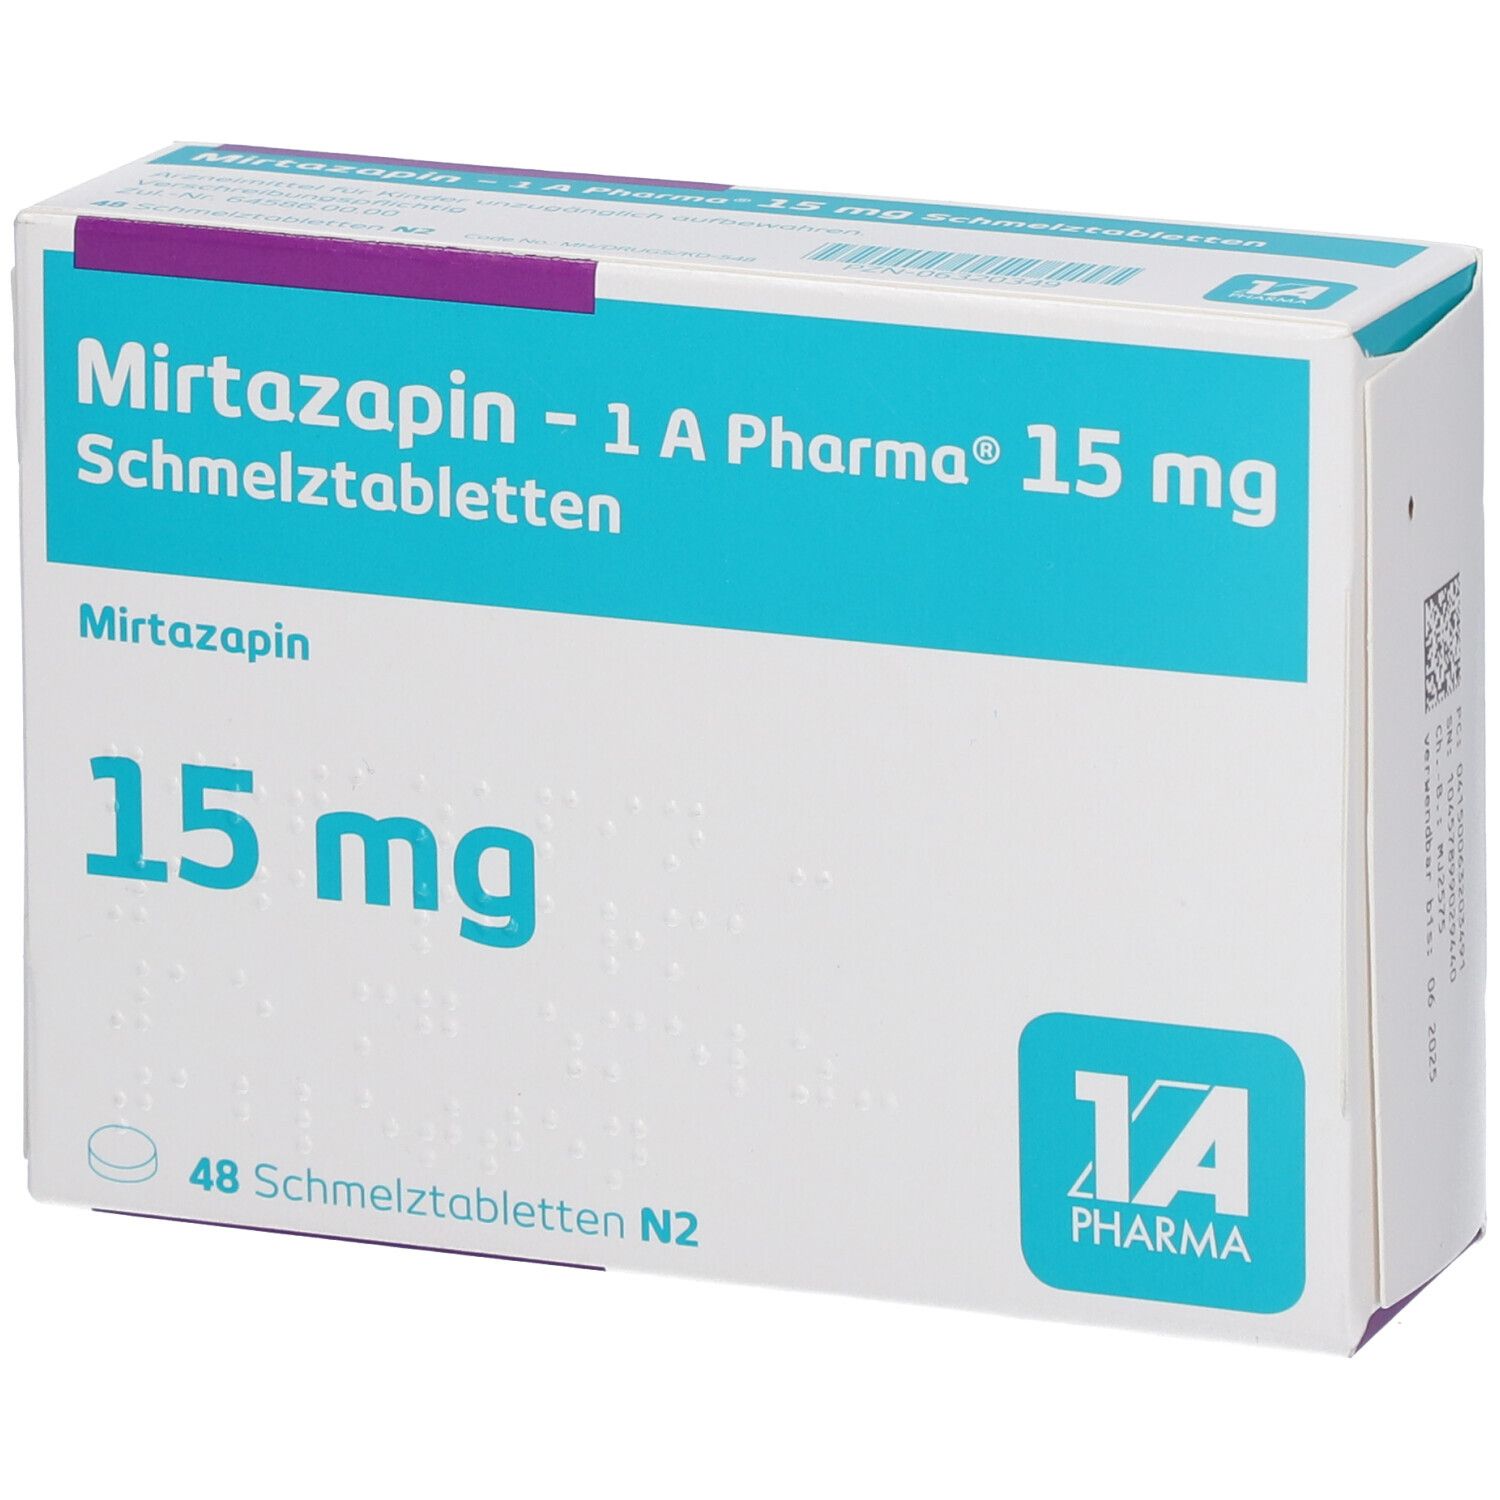 Mirtazapin 1A Pharma® 15Mg